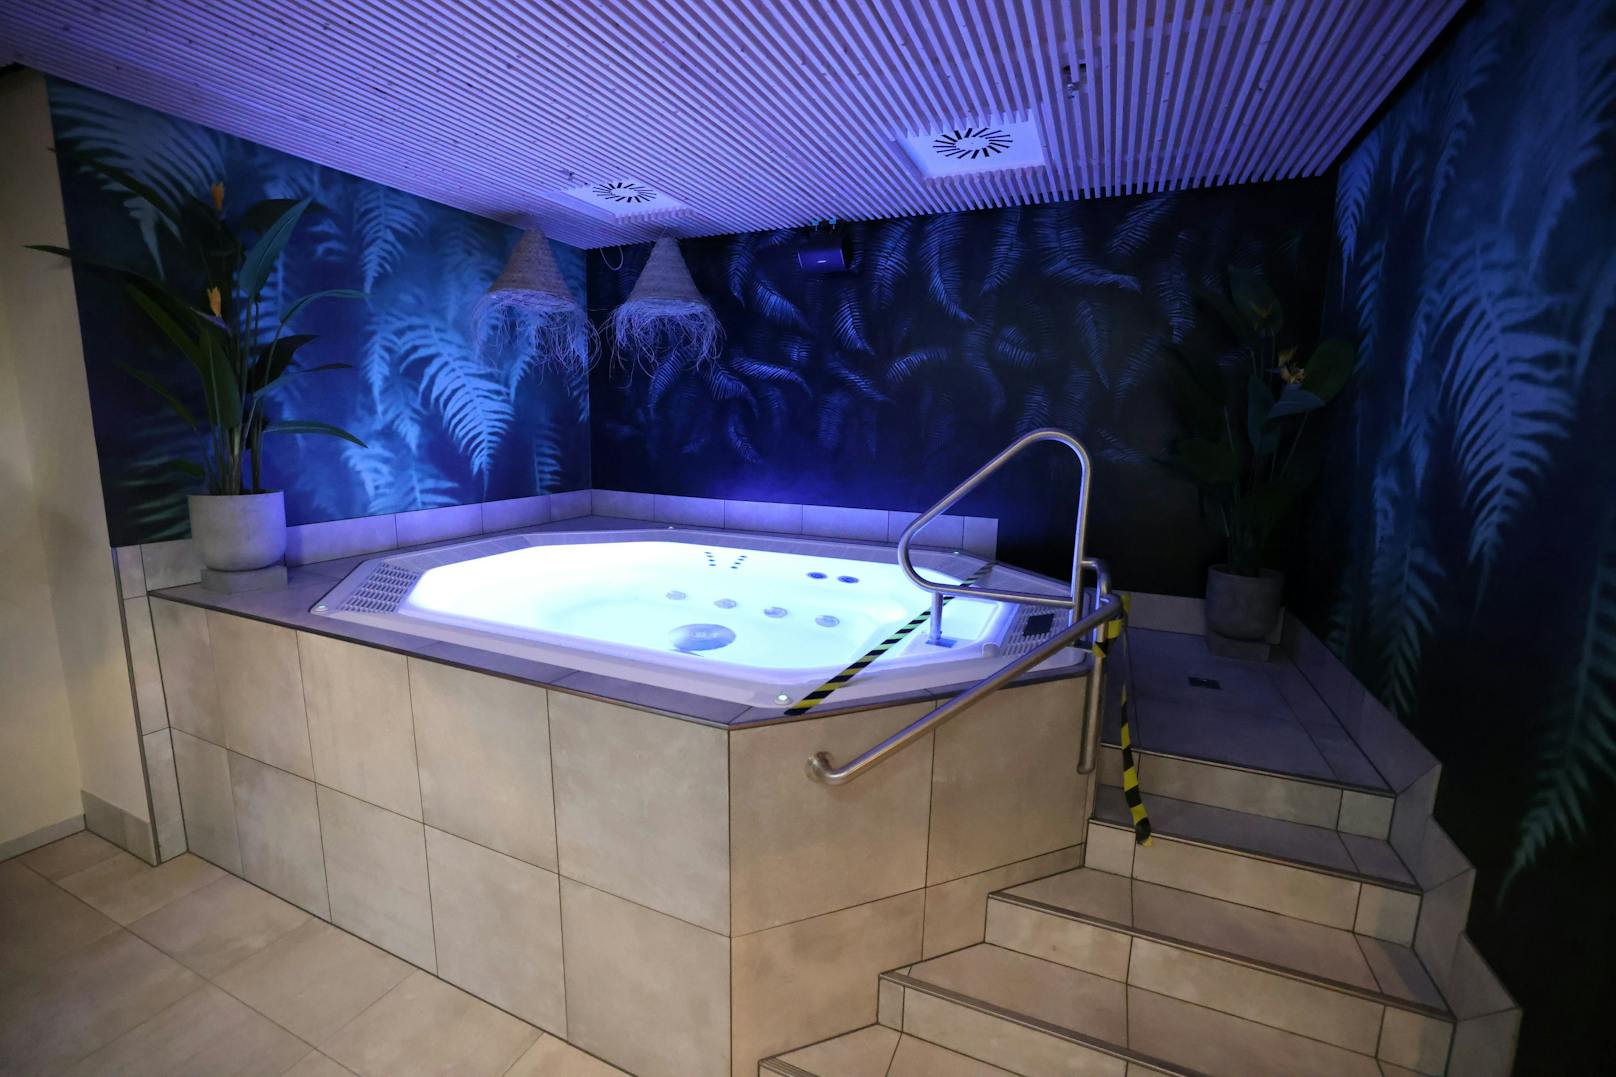 Im Whirlpool entspannen Frauen und Männern in getrennten Bereichen. Gemeinsames saunieren geht für Paar im Wellness-Bereich der Männer.